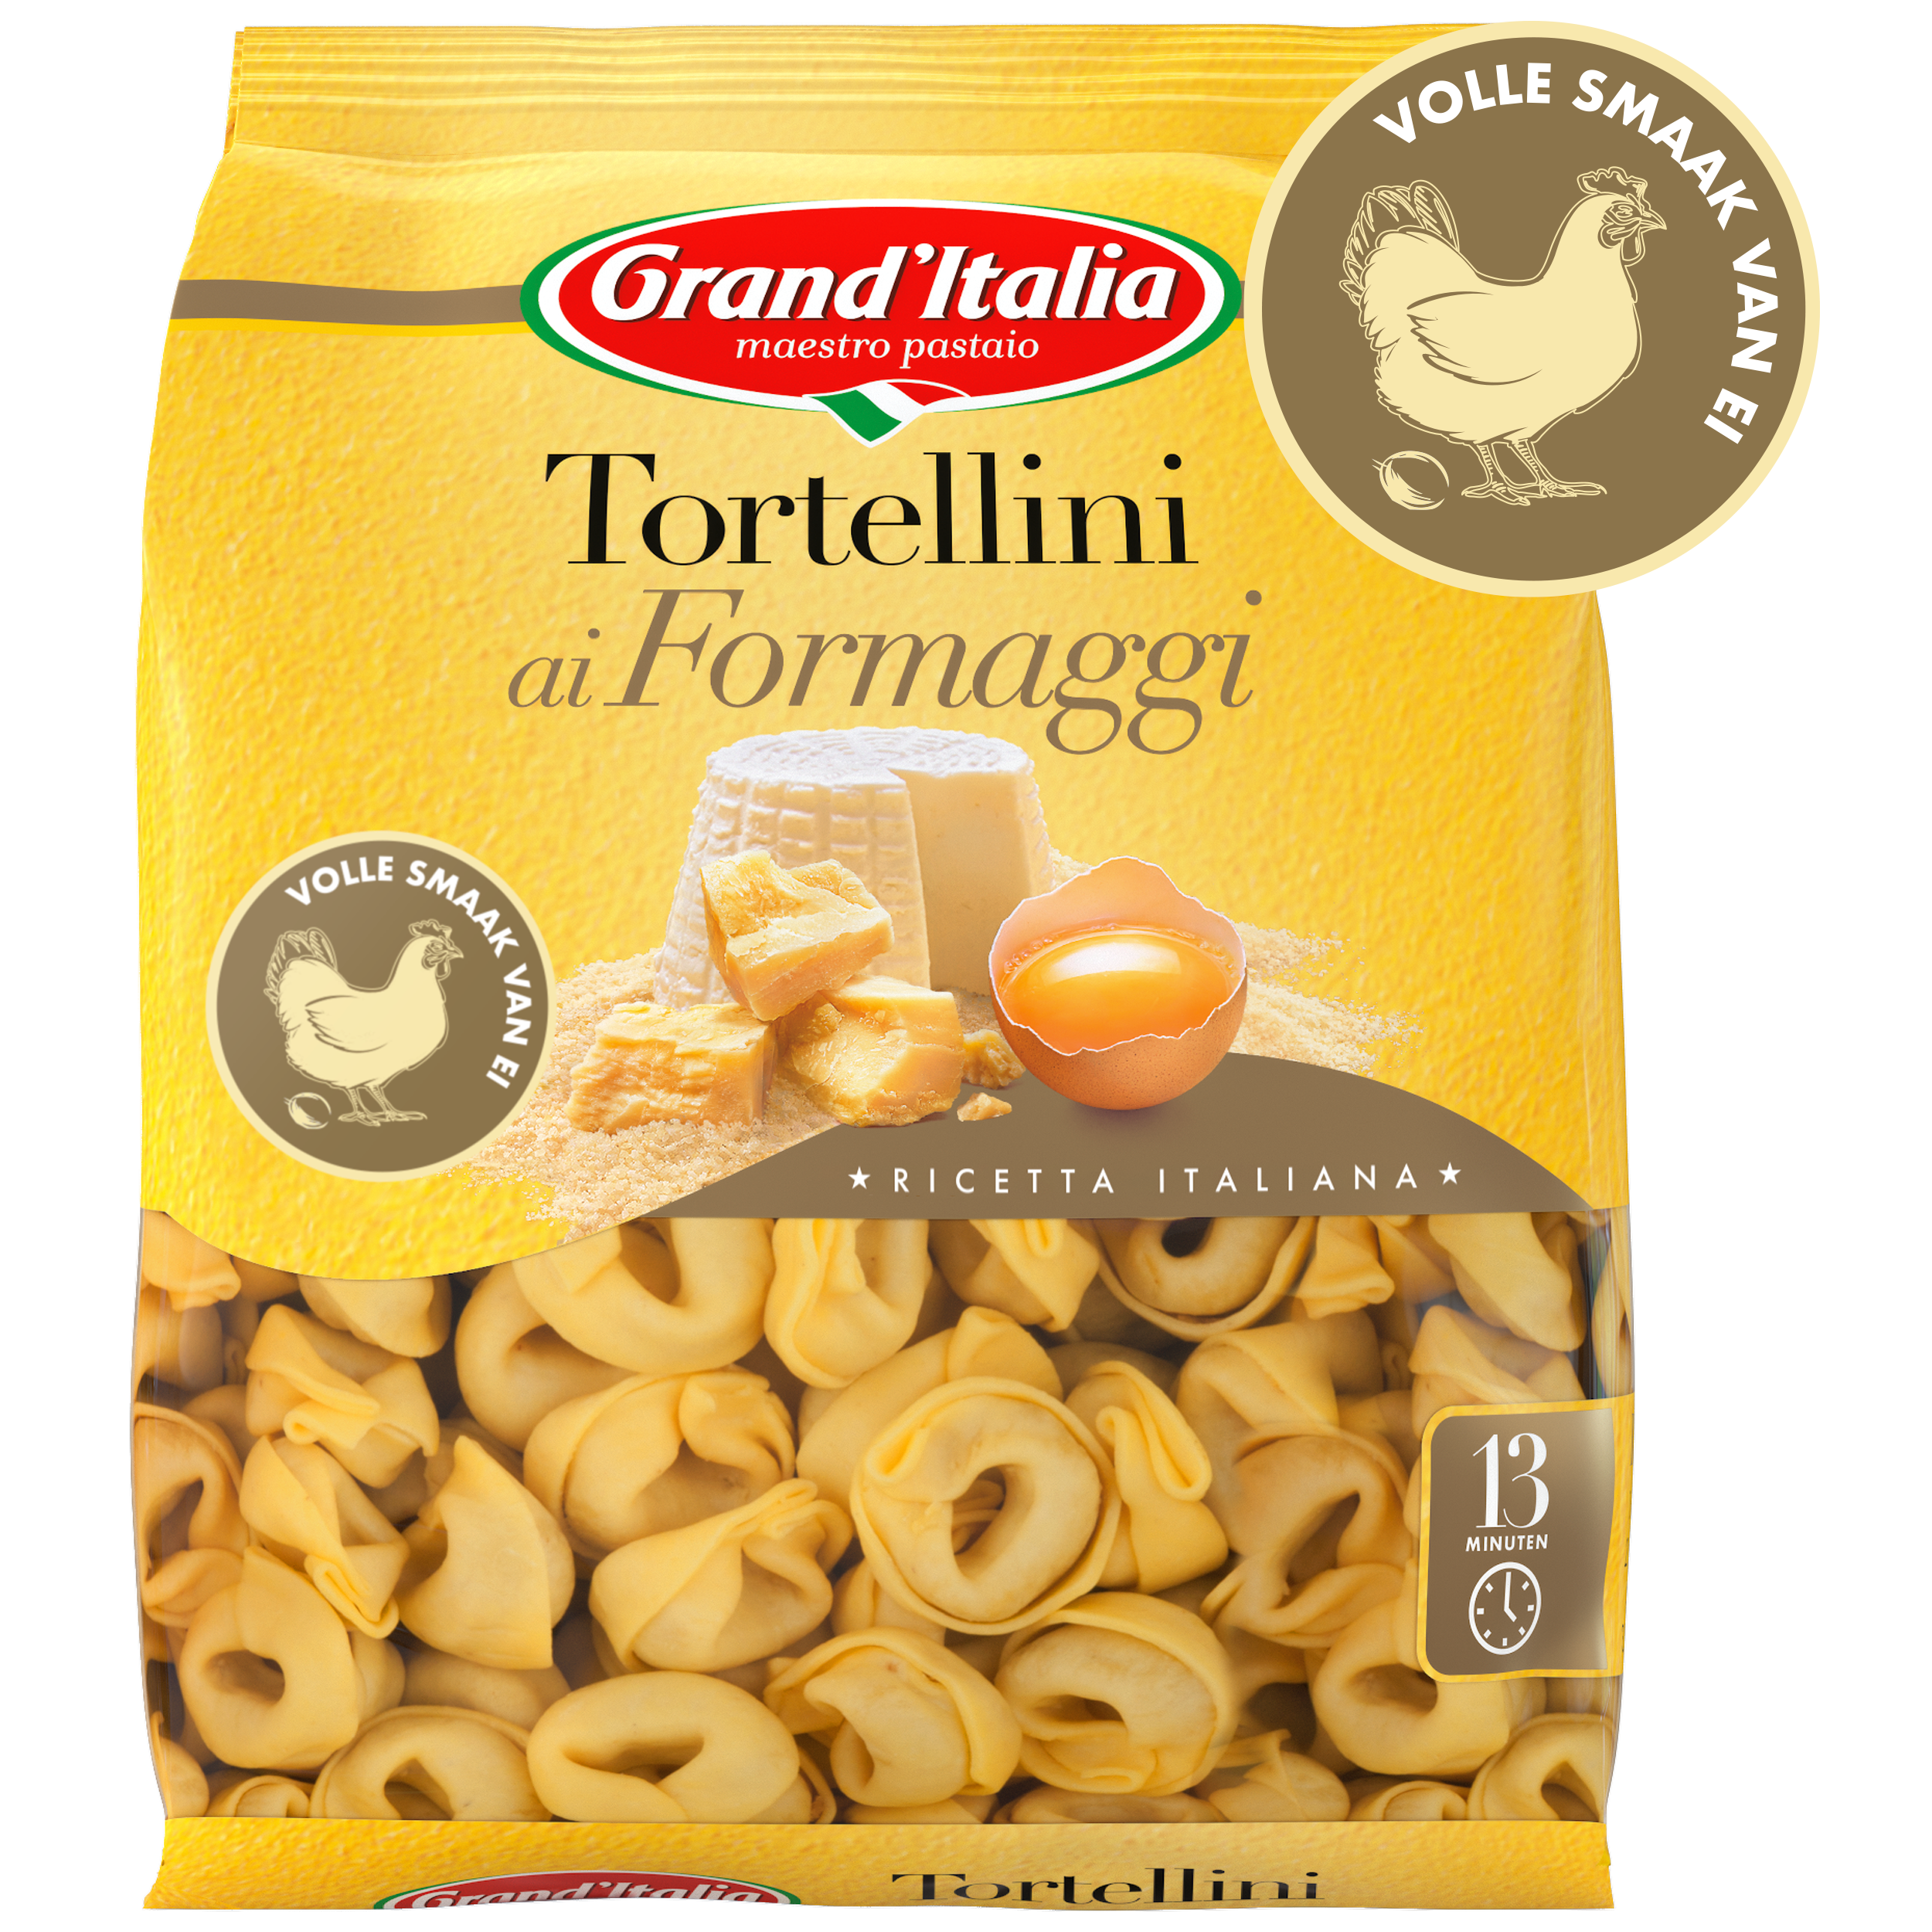 Pasta Tortellini ai Formaggi 440g claim Grand'Italia